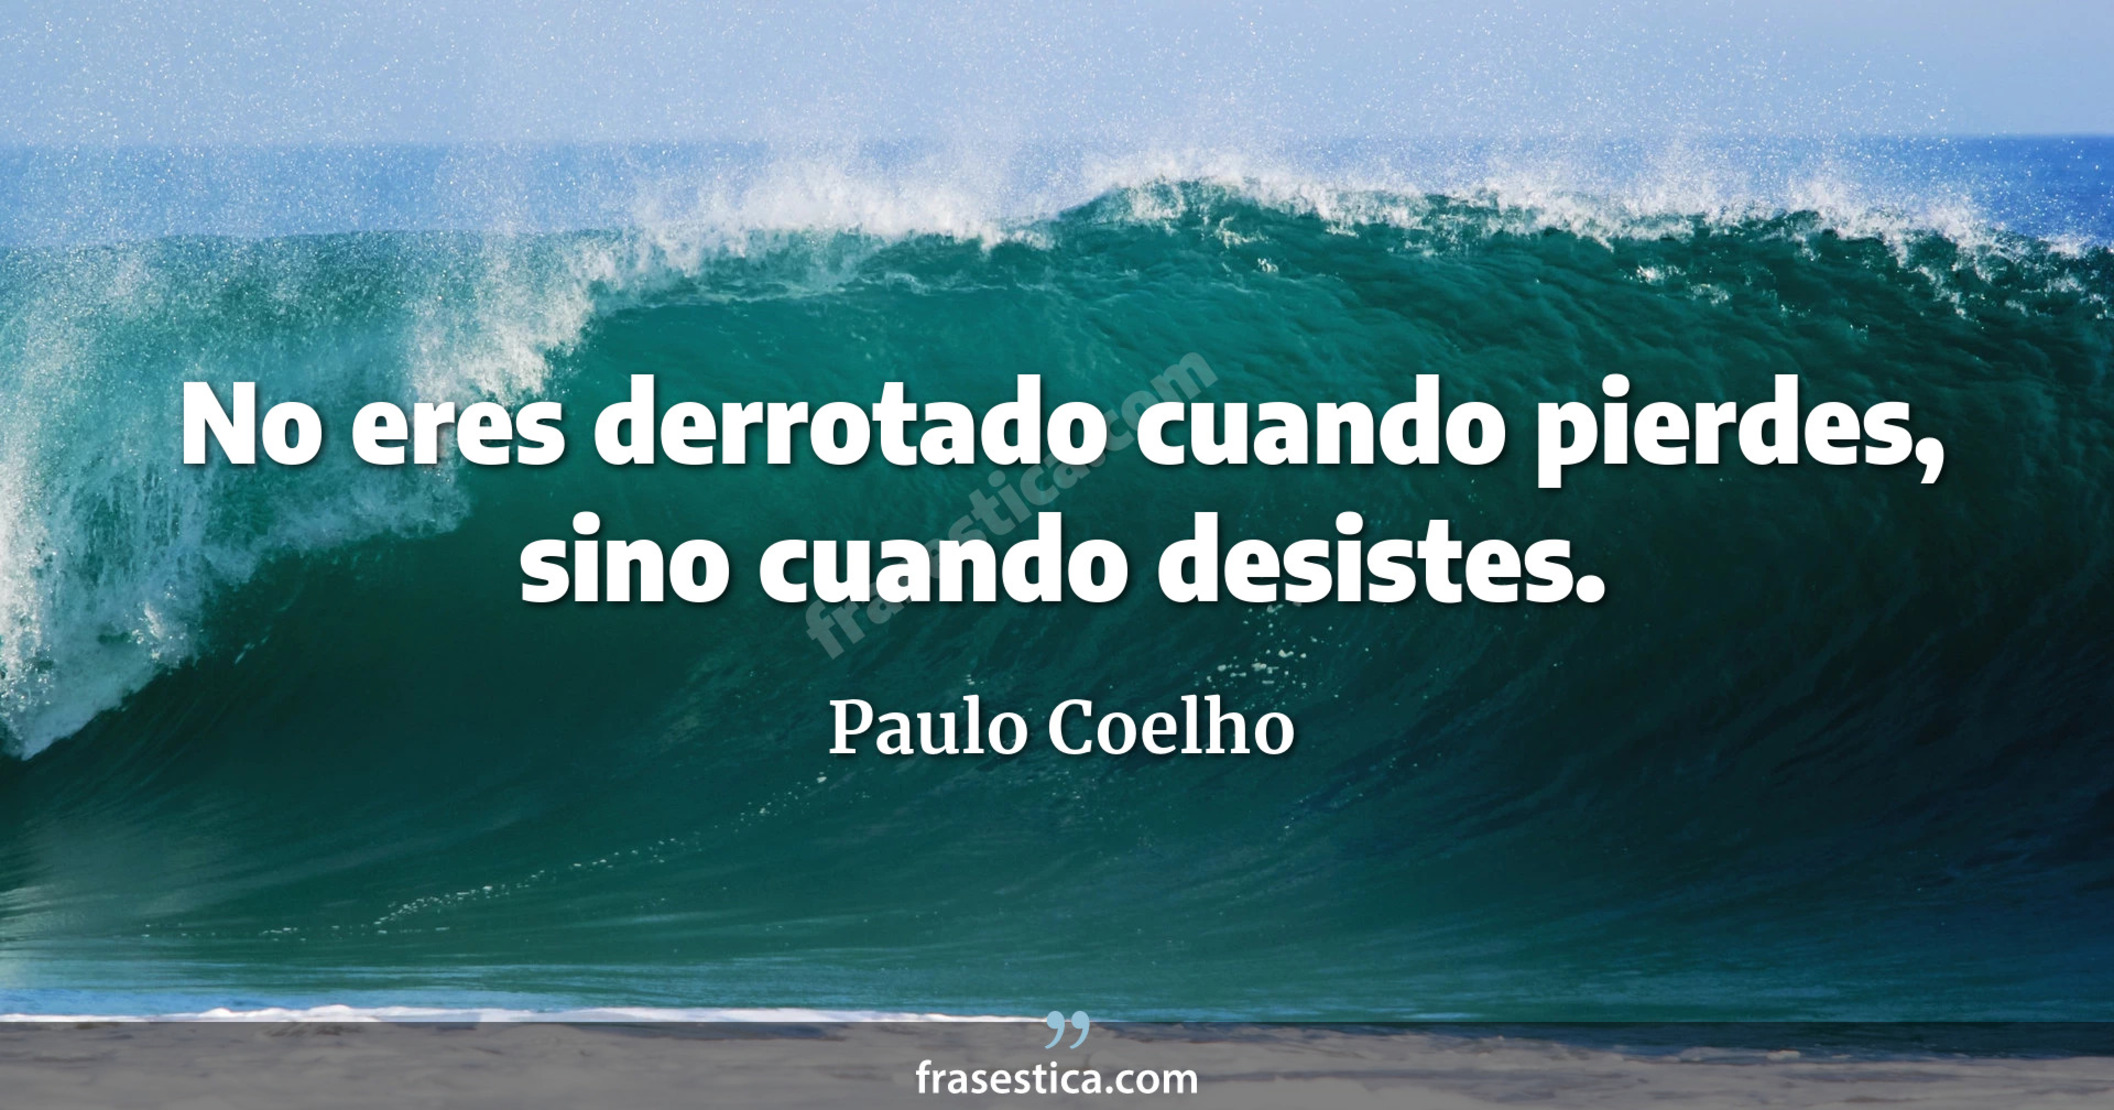 No eres derrotado cuando pierdes, sino cuando desistes. - Paulo Coelho